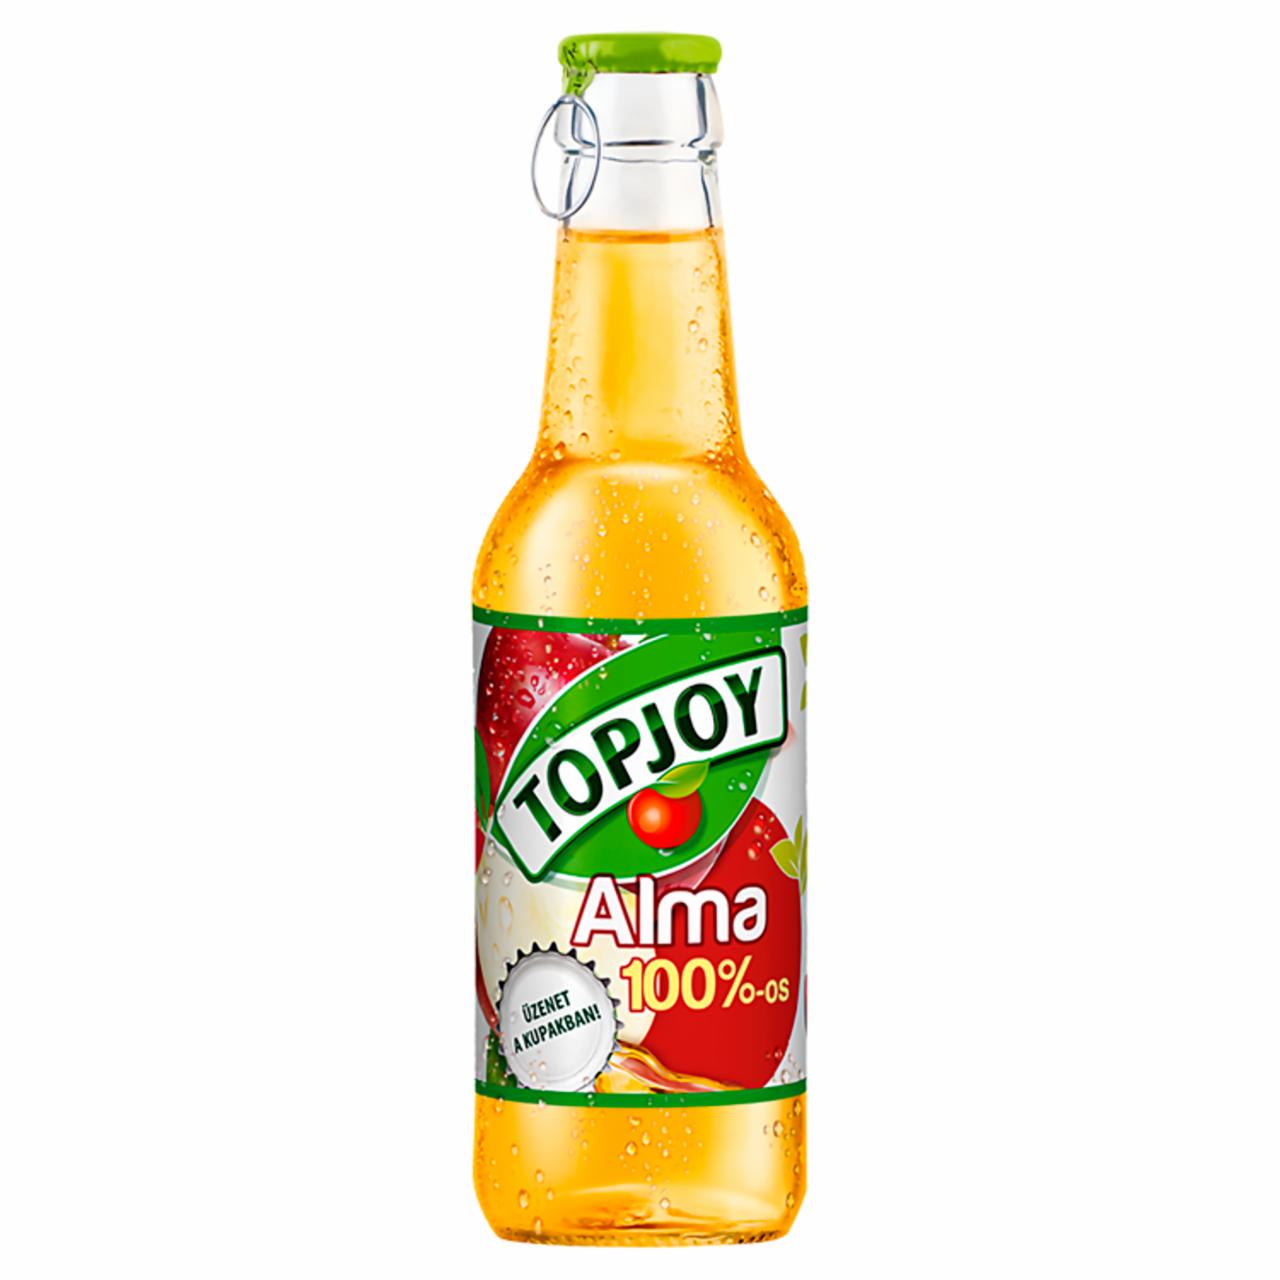 Képek - Topjoy 100%-os alma ital 250 ml